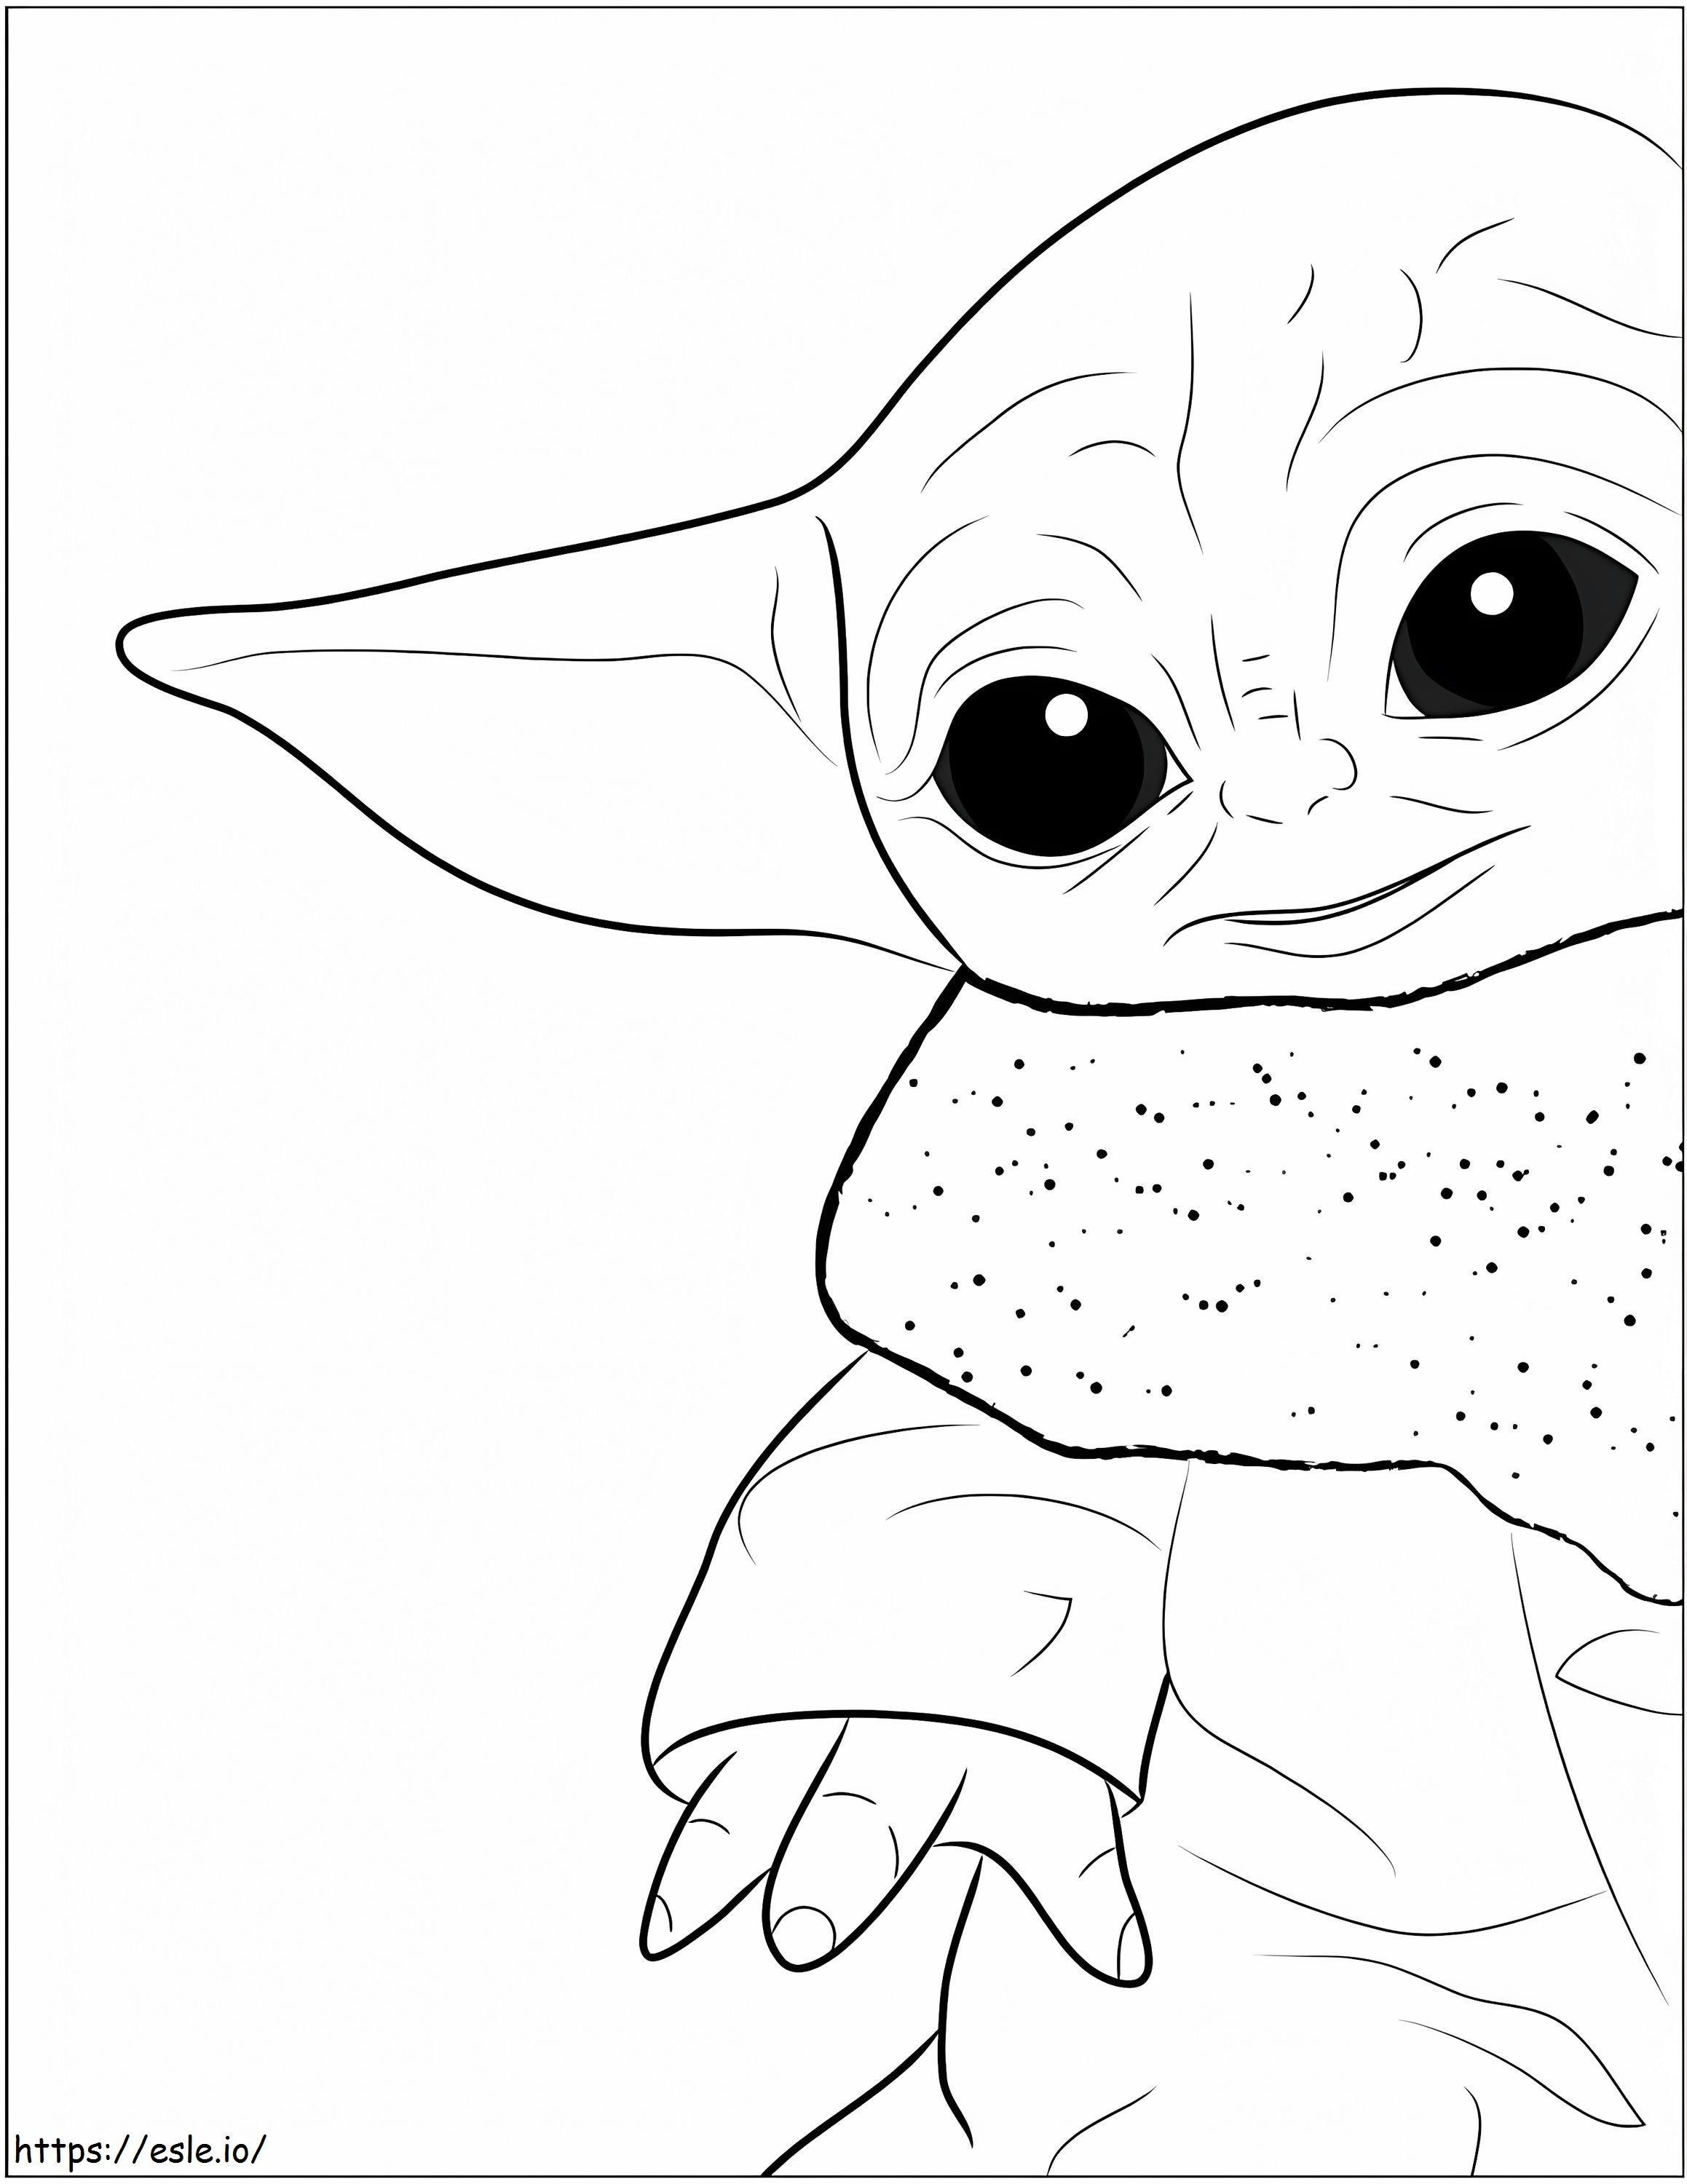 Schönes Baby Yoda ausmalbilder